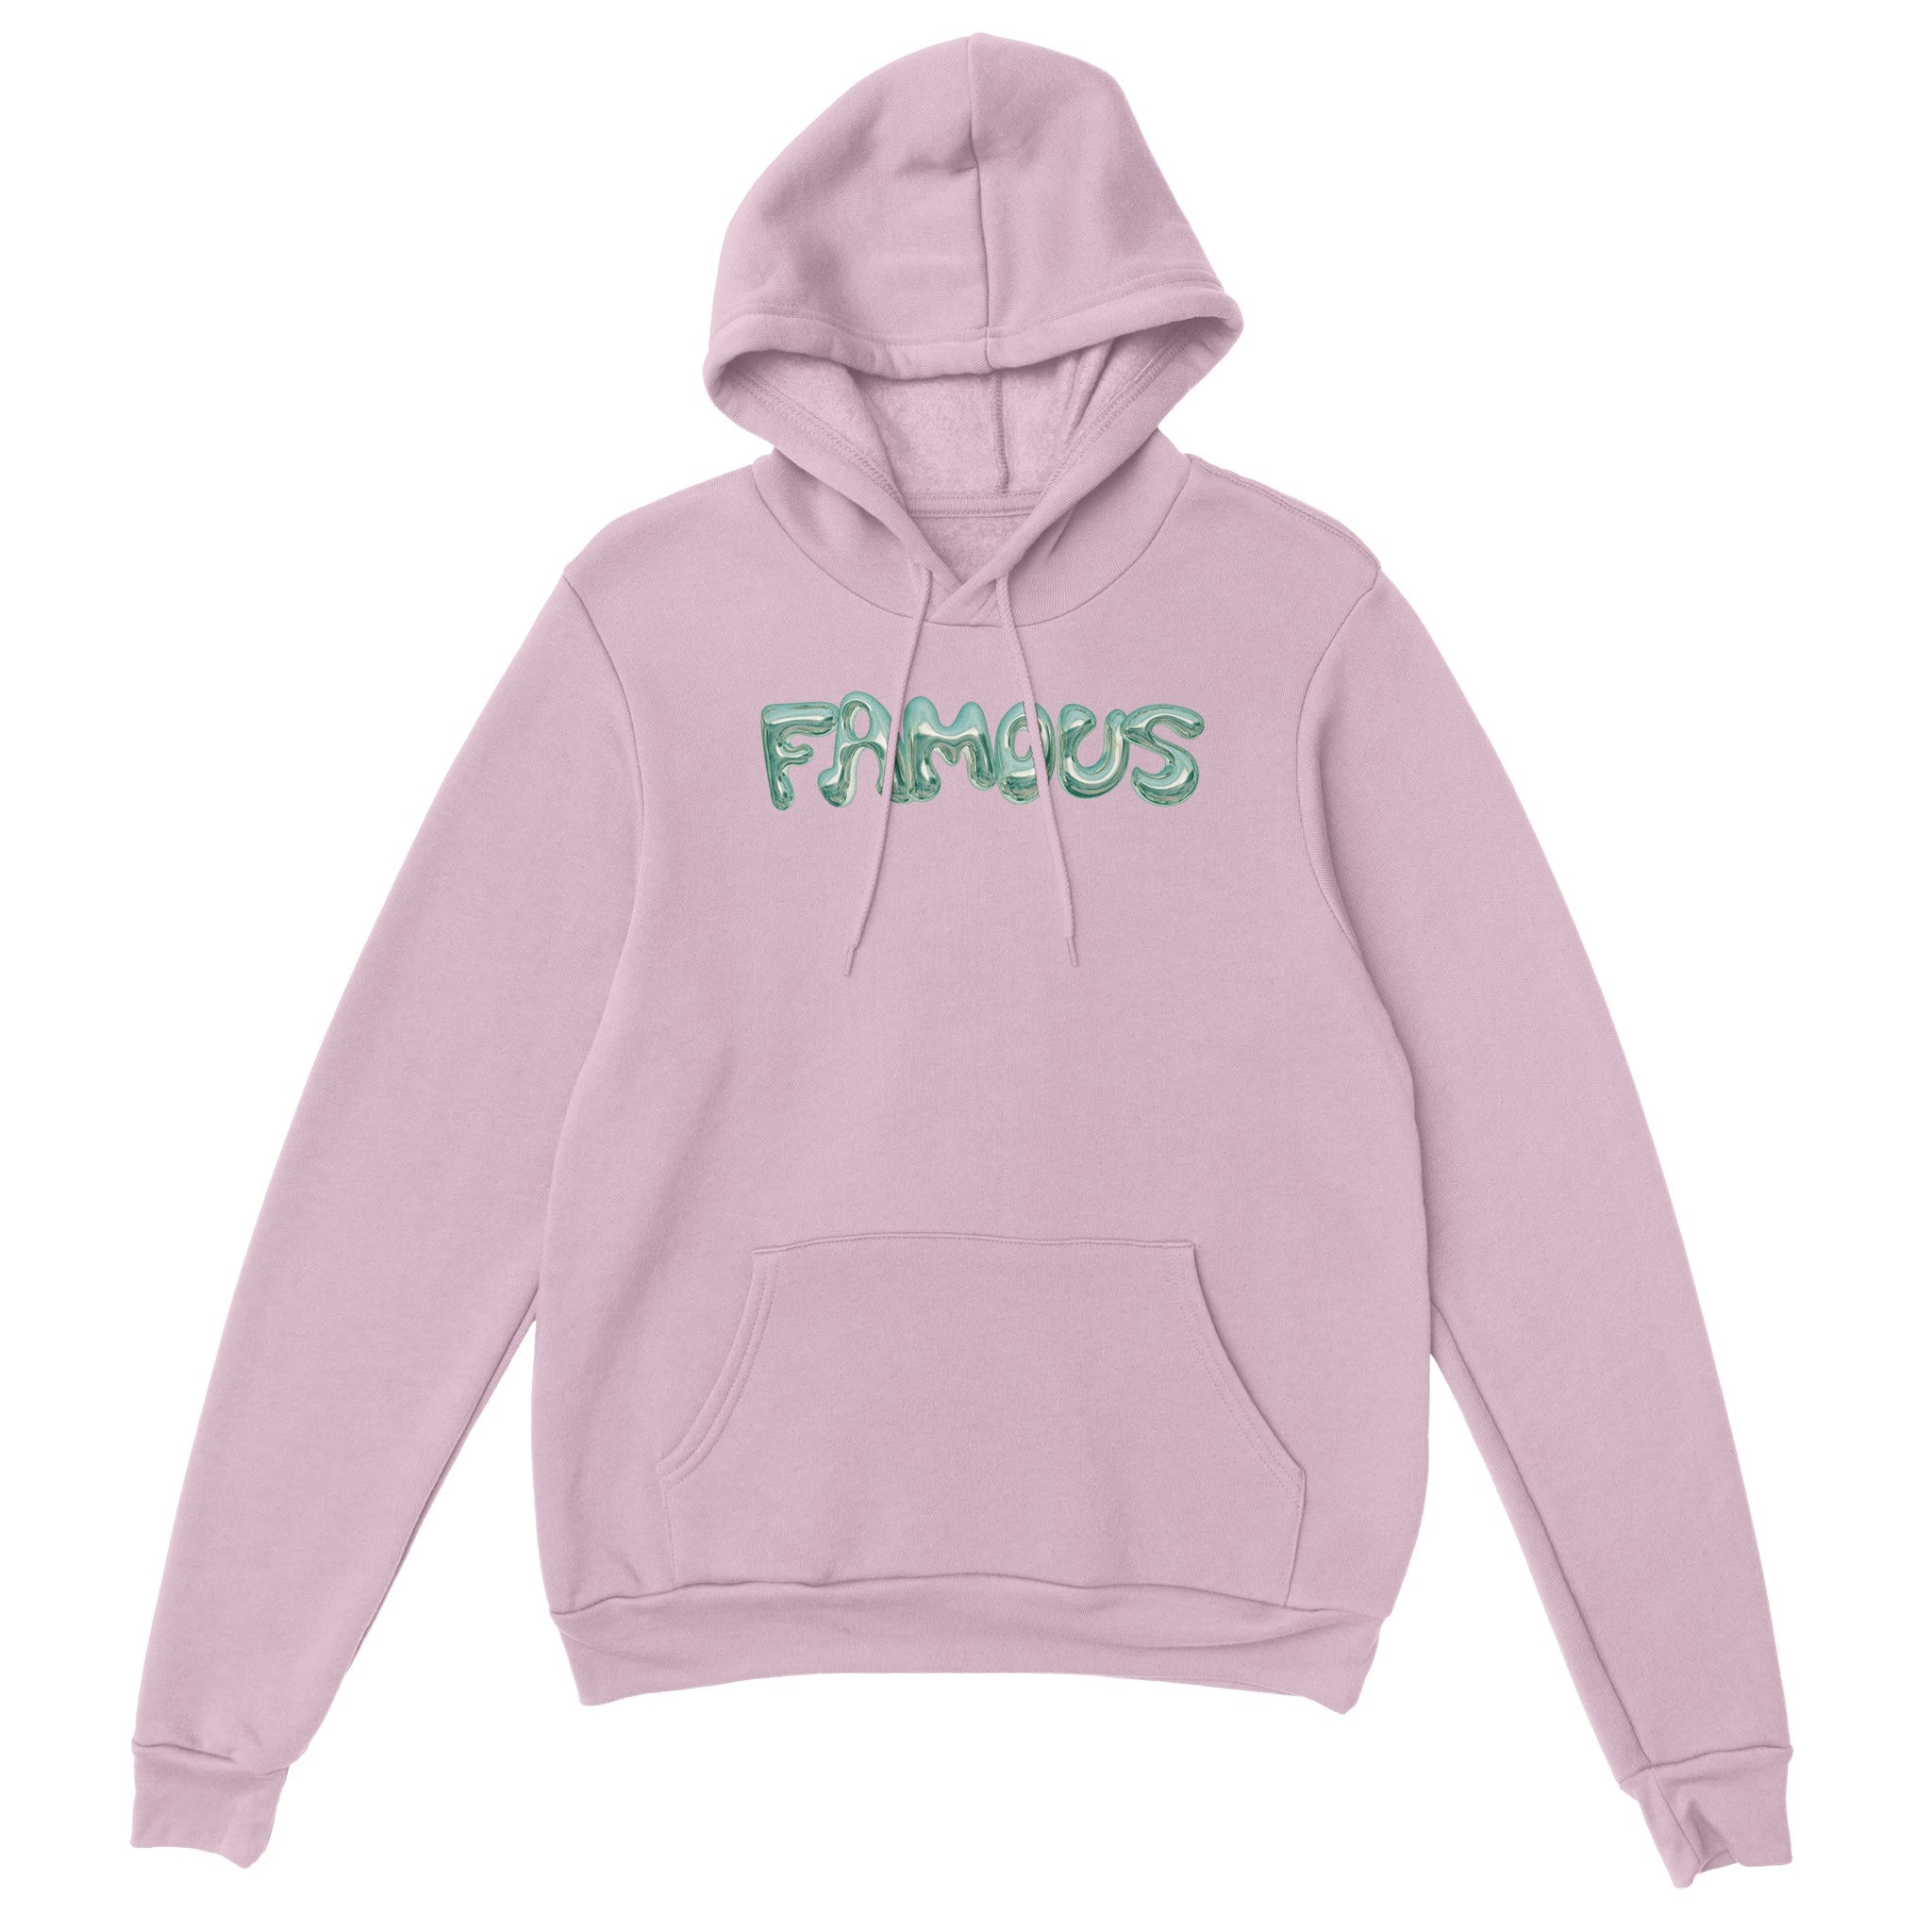 'Famous' hoodie - In Print We Trust